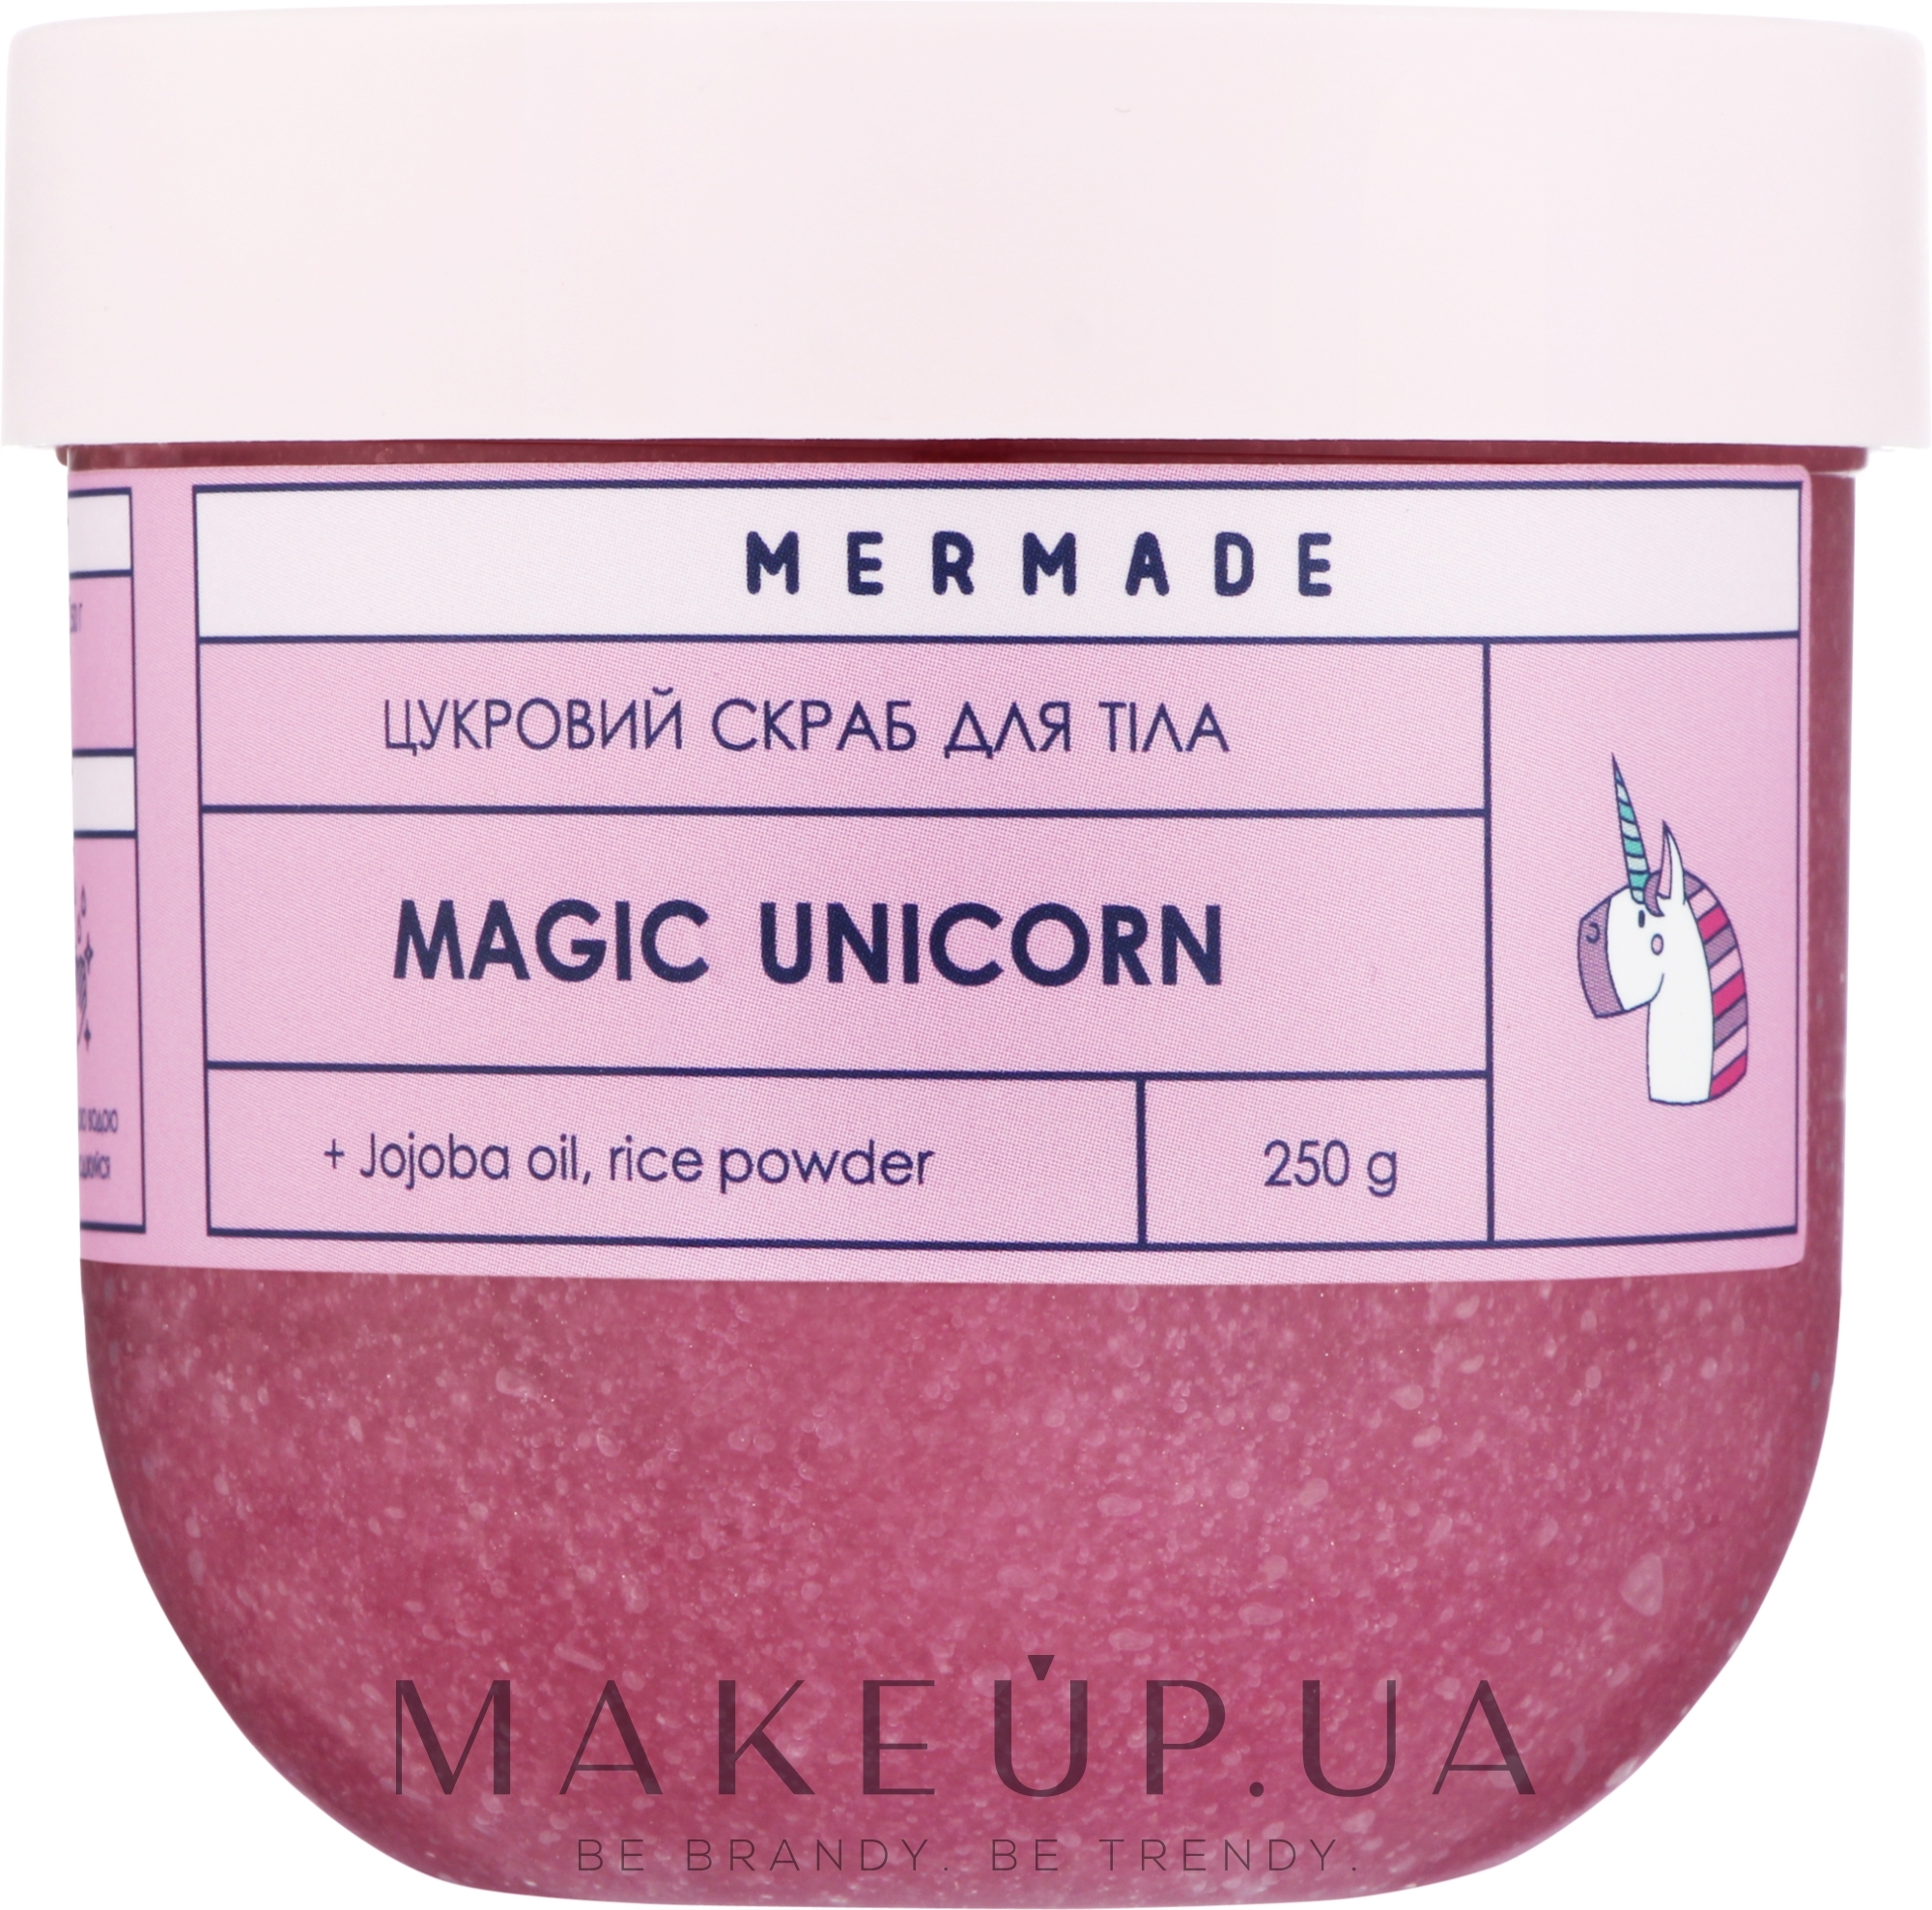 Цукровий скраб для тіла - Mermade Magic Unicorn — фото 250g